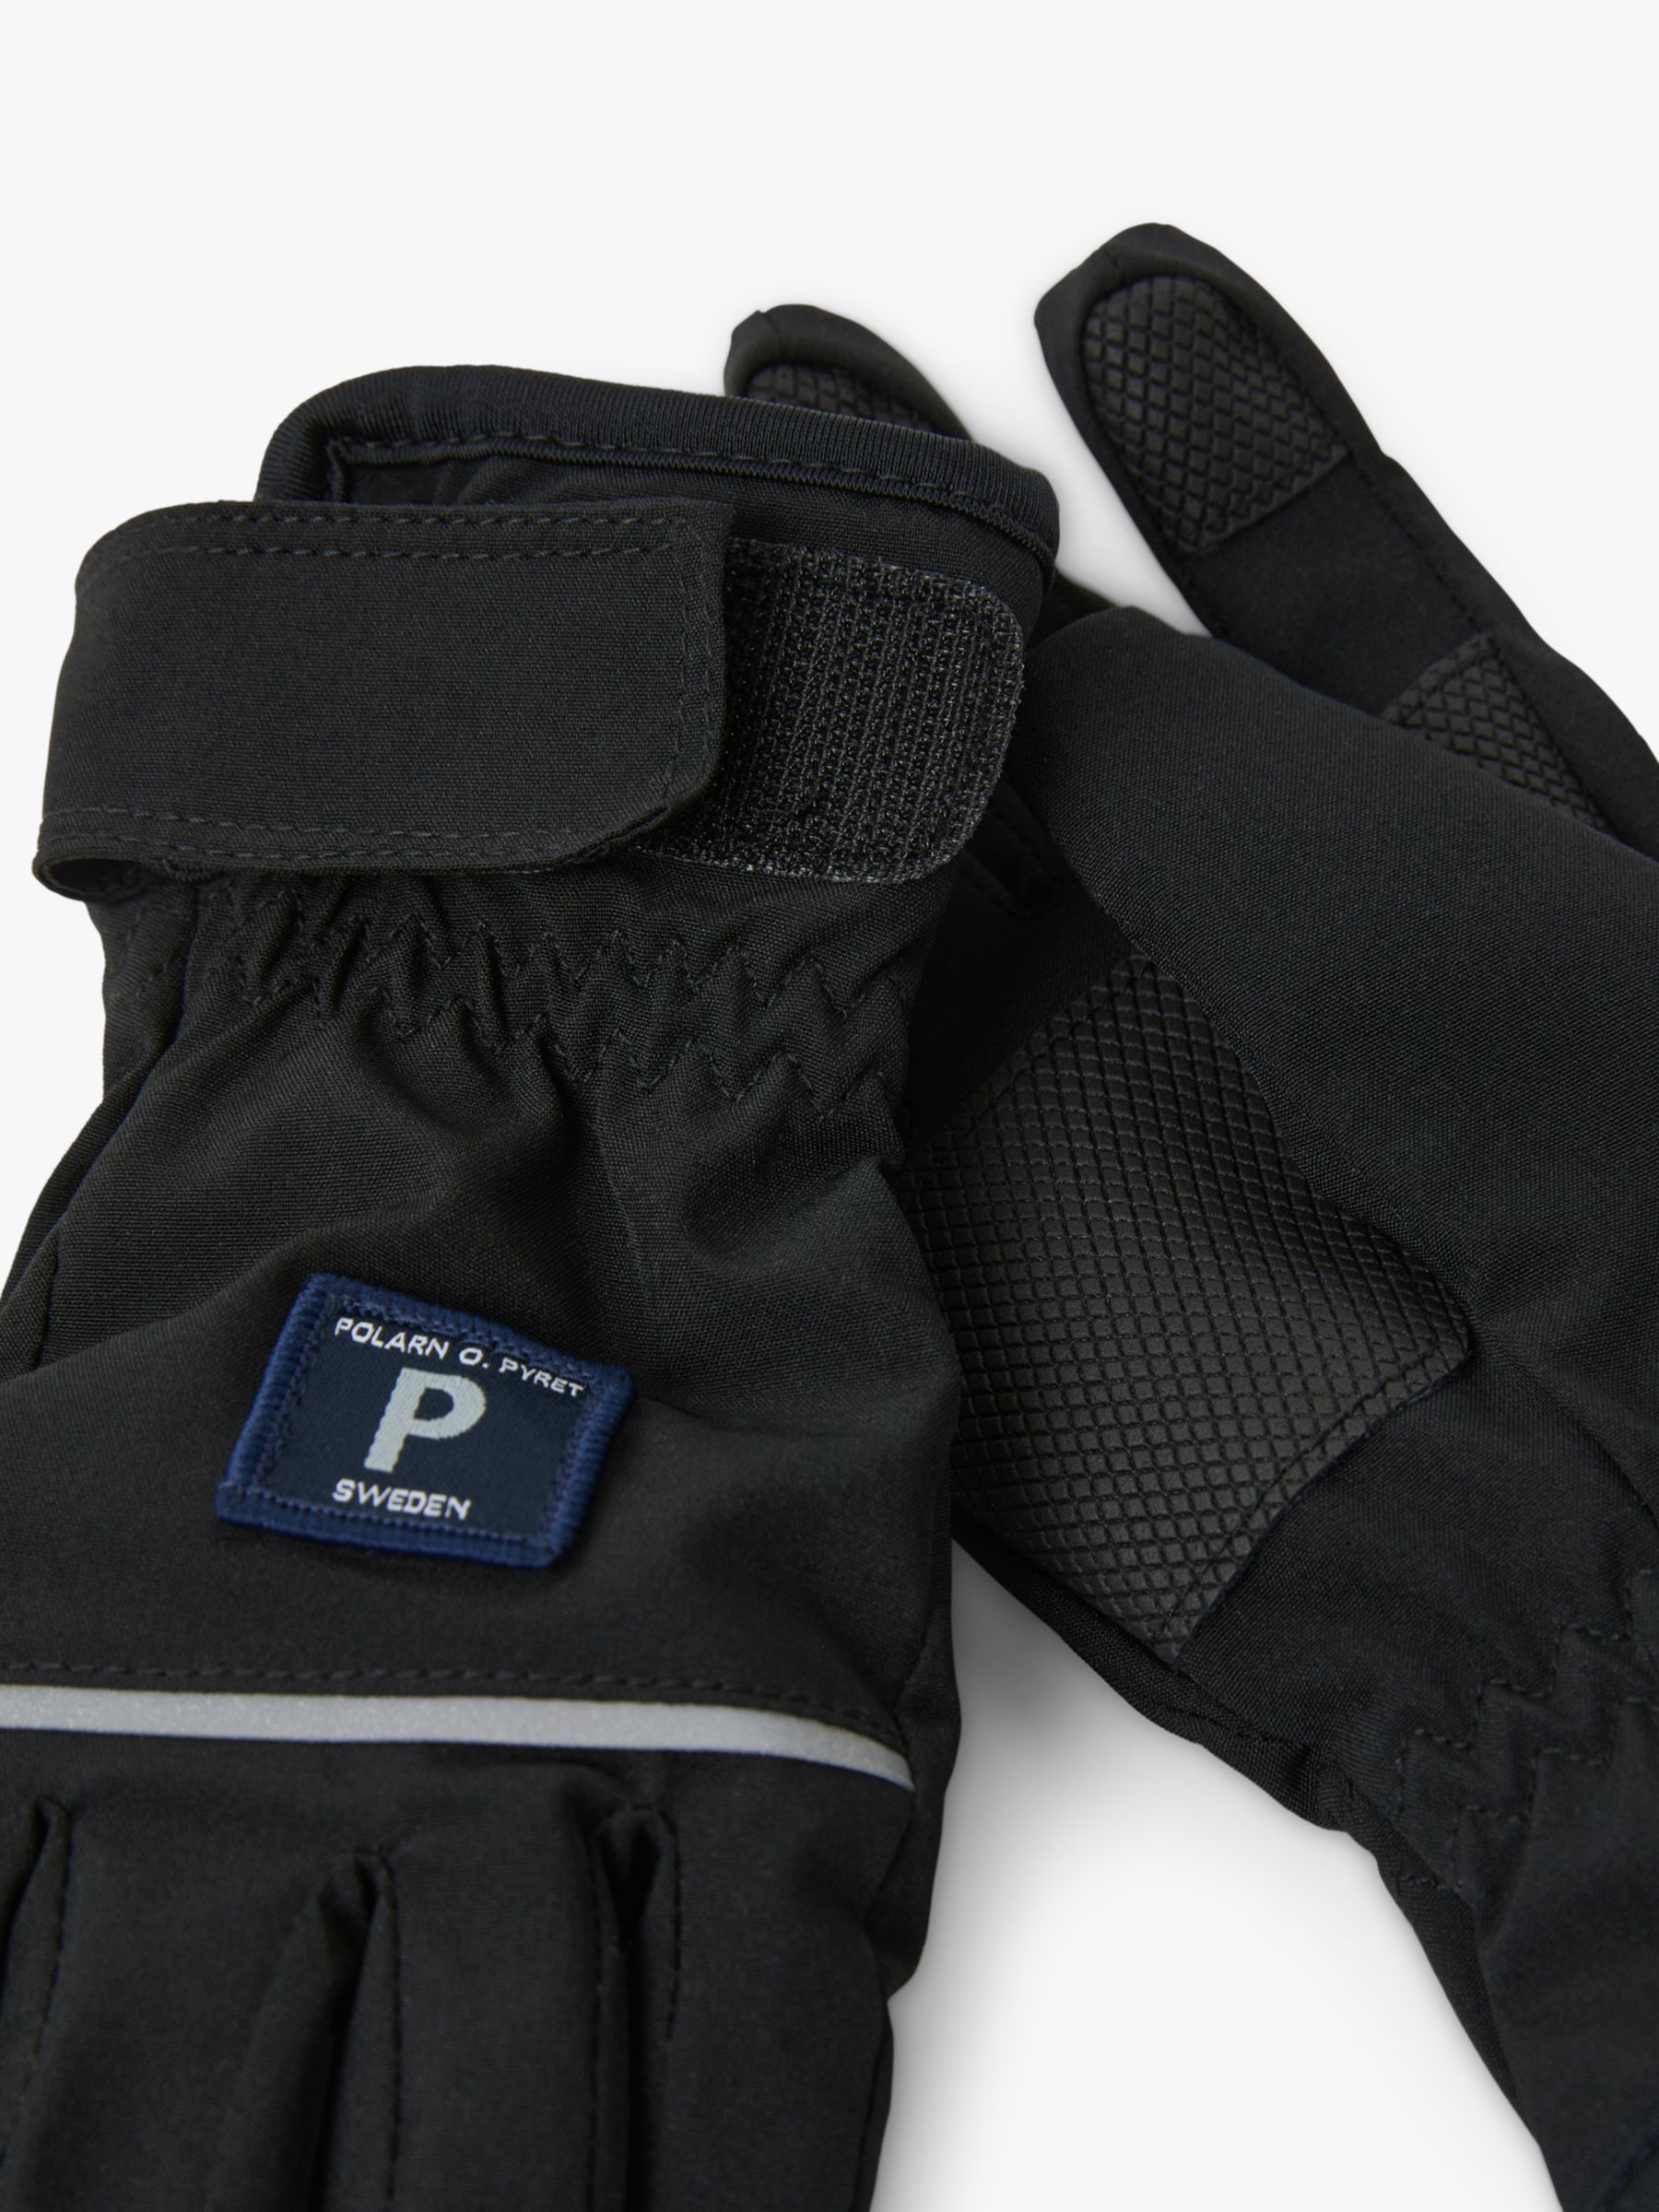 Buy Polarn O. Pyret Kids' Soft Gloves, Black Online at johnlewis.com